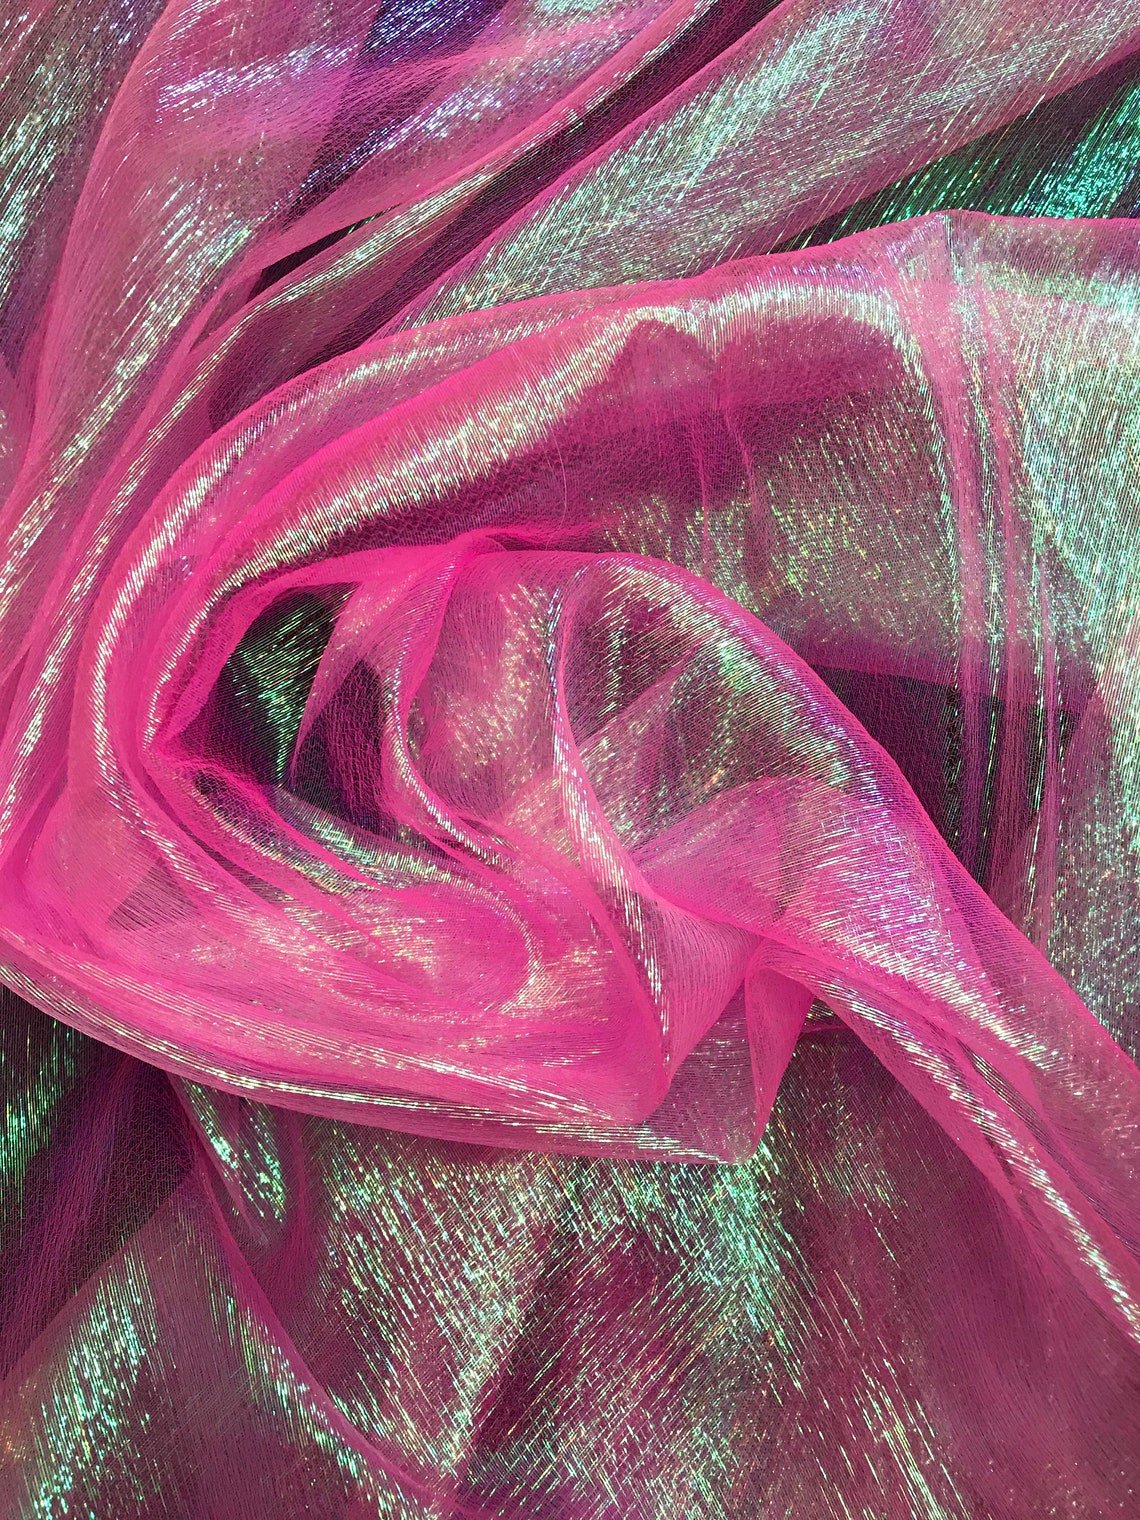 Crystal Sheer Iridescent Organza Fabric_ Neon Pink Iridescent FabricICE FABRICSICE FABRICSBy The YardCrystal Sheer Iridescent Organza Fabric_ Neon Pink Iridescent Fabric ICE FABRICS